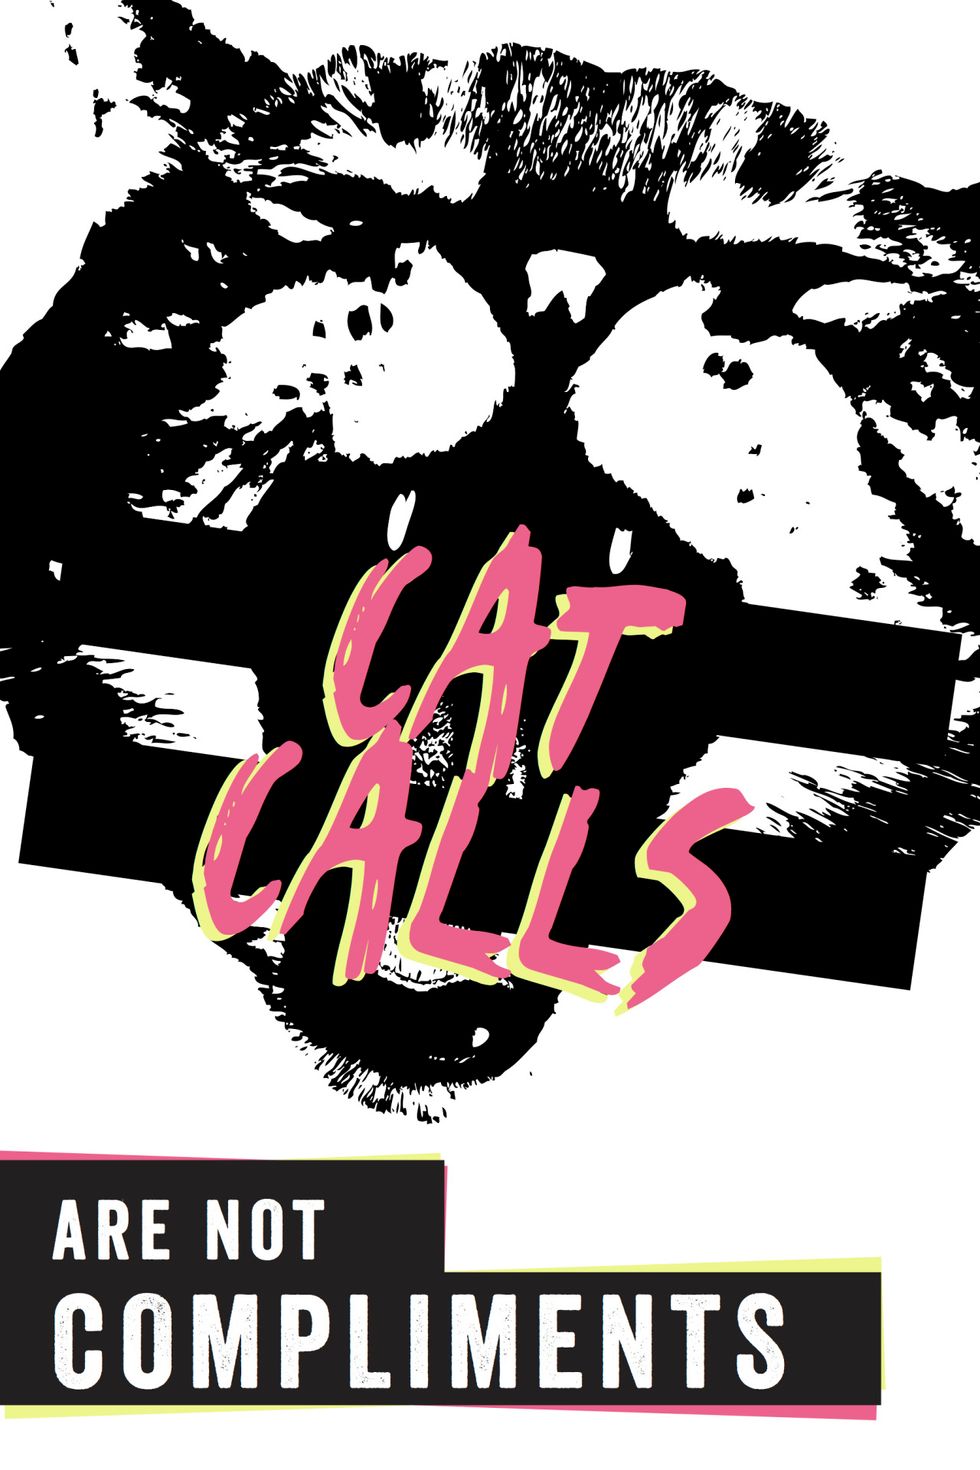 Cat-Calling: Let's Have A Conversation